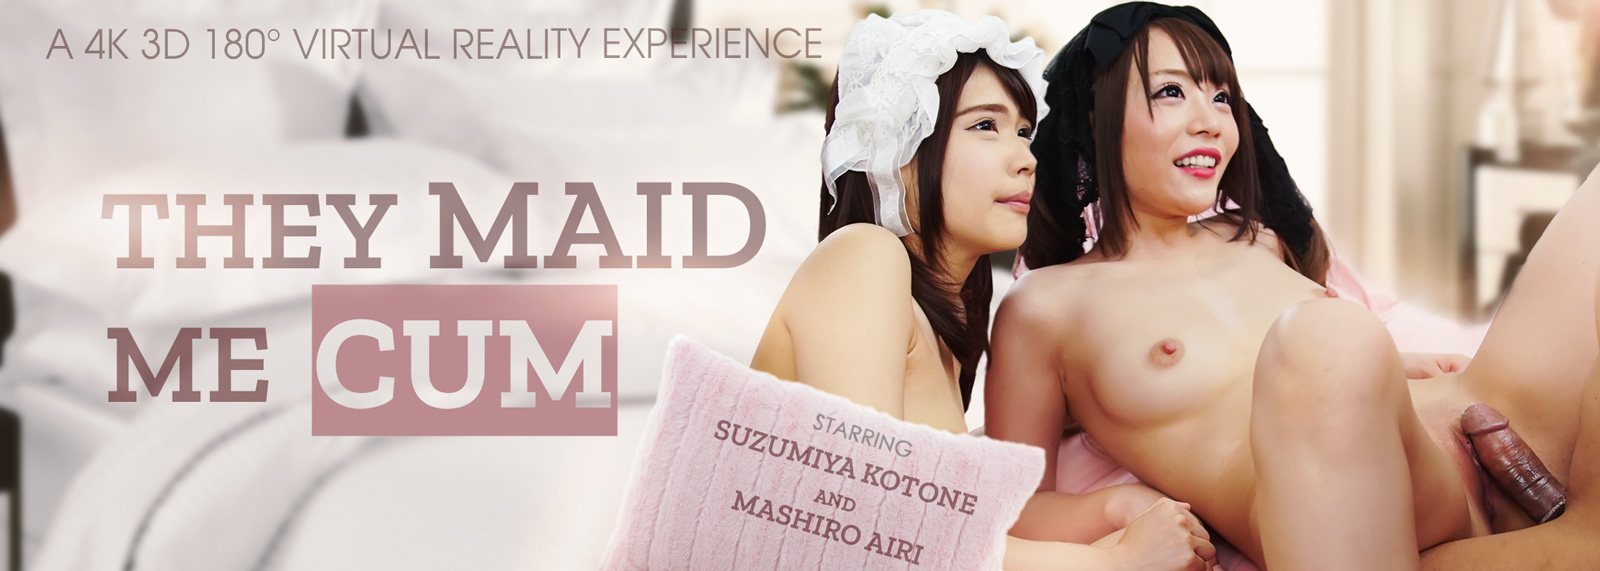 They Maid Me Cum - VR Porn Video, Starring: Mashiro Airi, Suzumiya Kotone